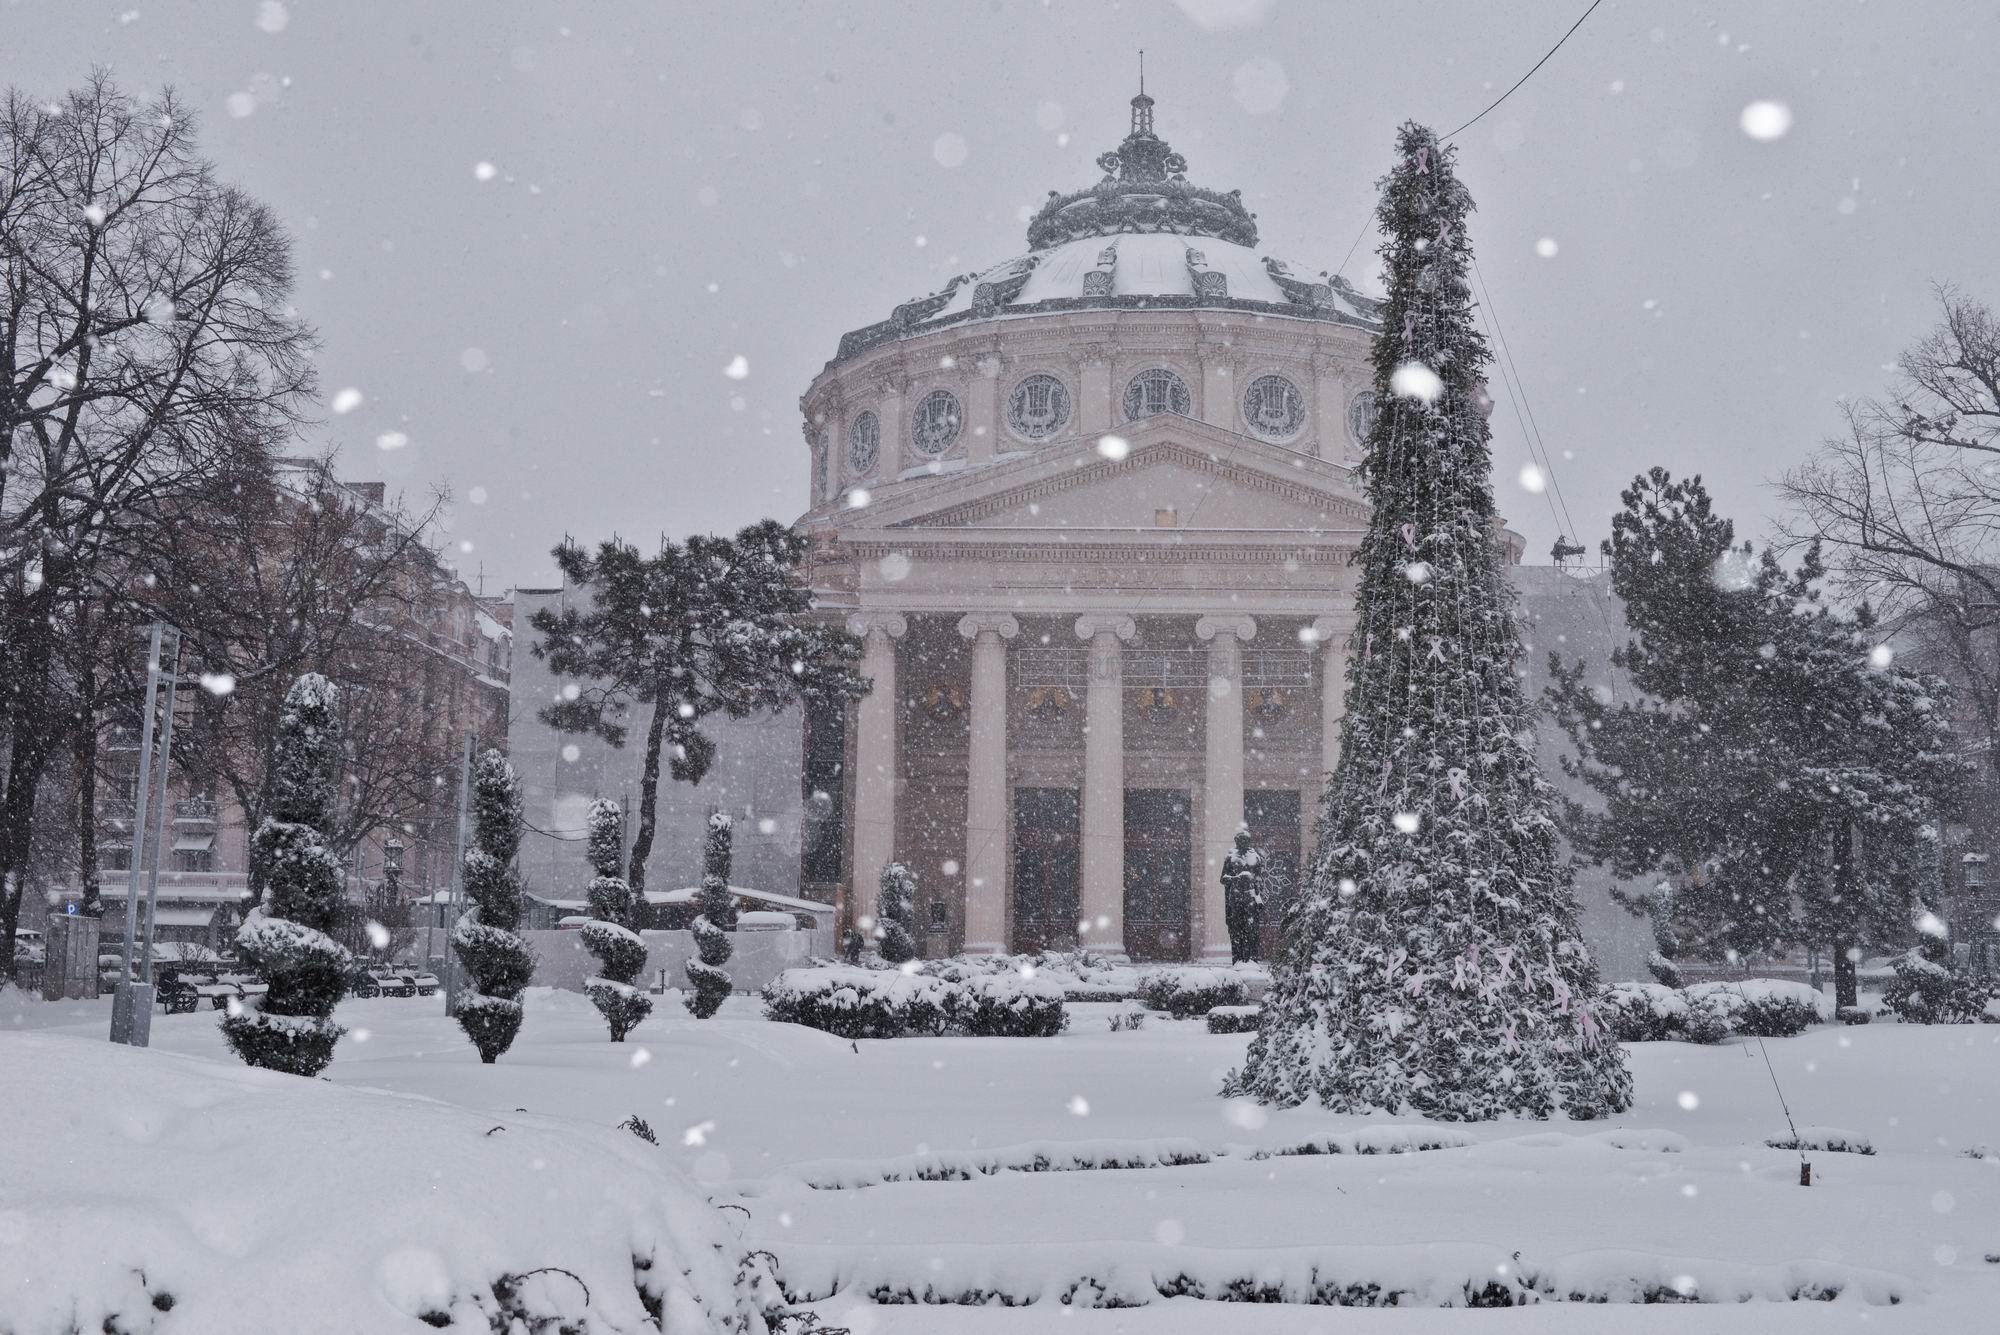 ANM, prognoză meteo specială. Cum va fi vremea în București în intervalul 23-25 ianuarie